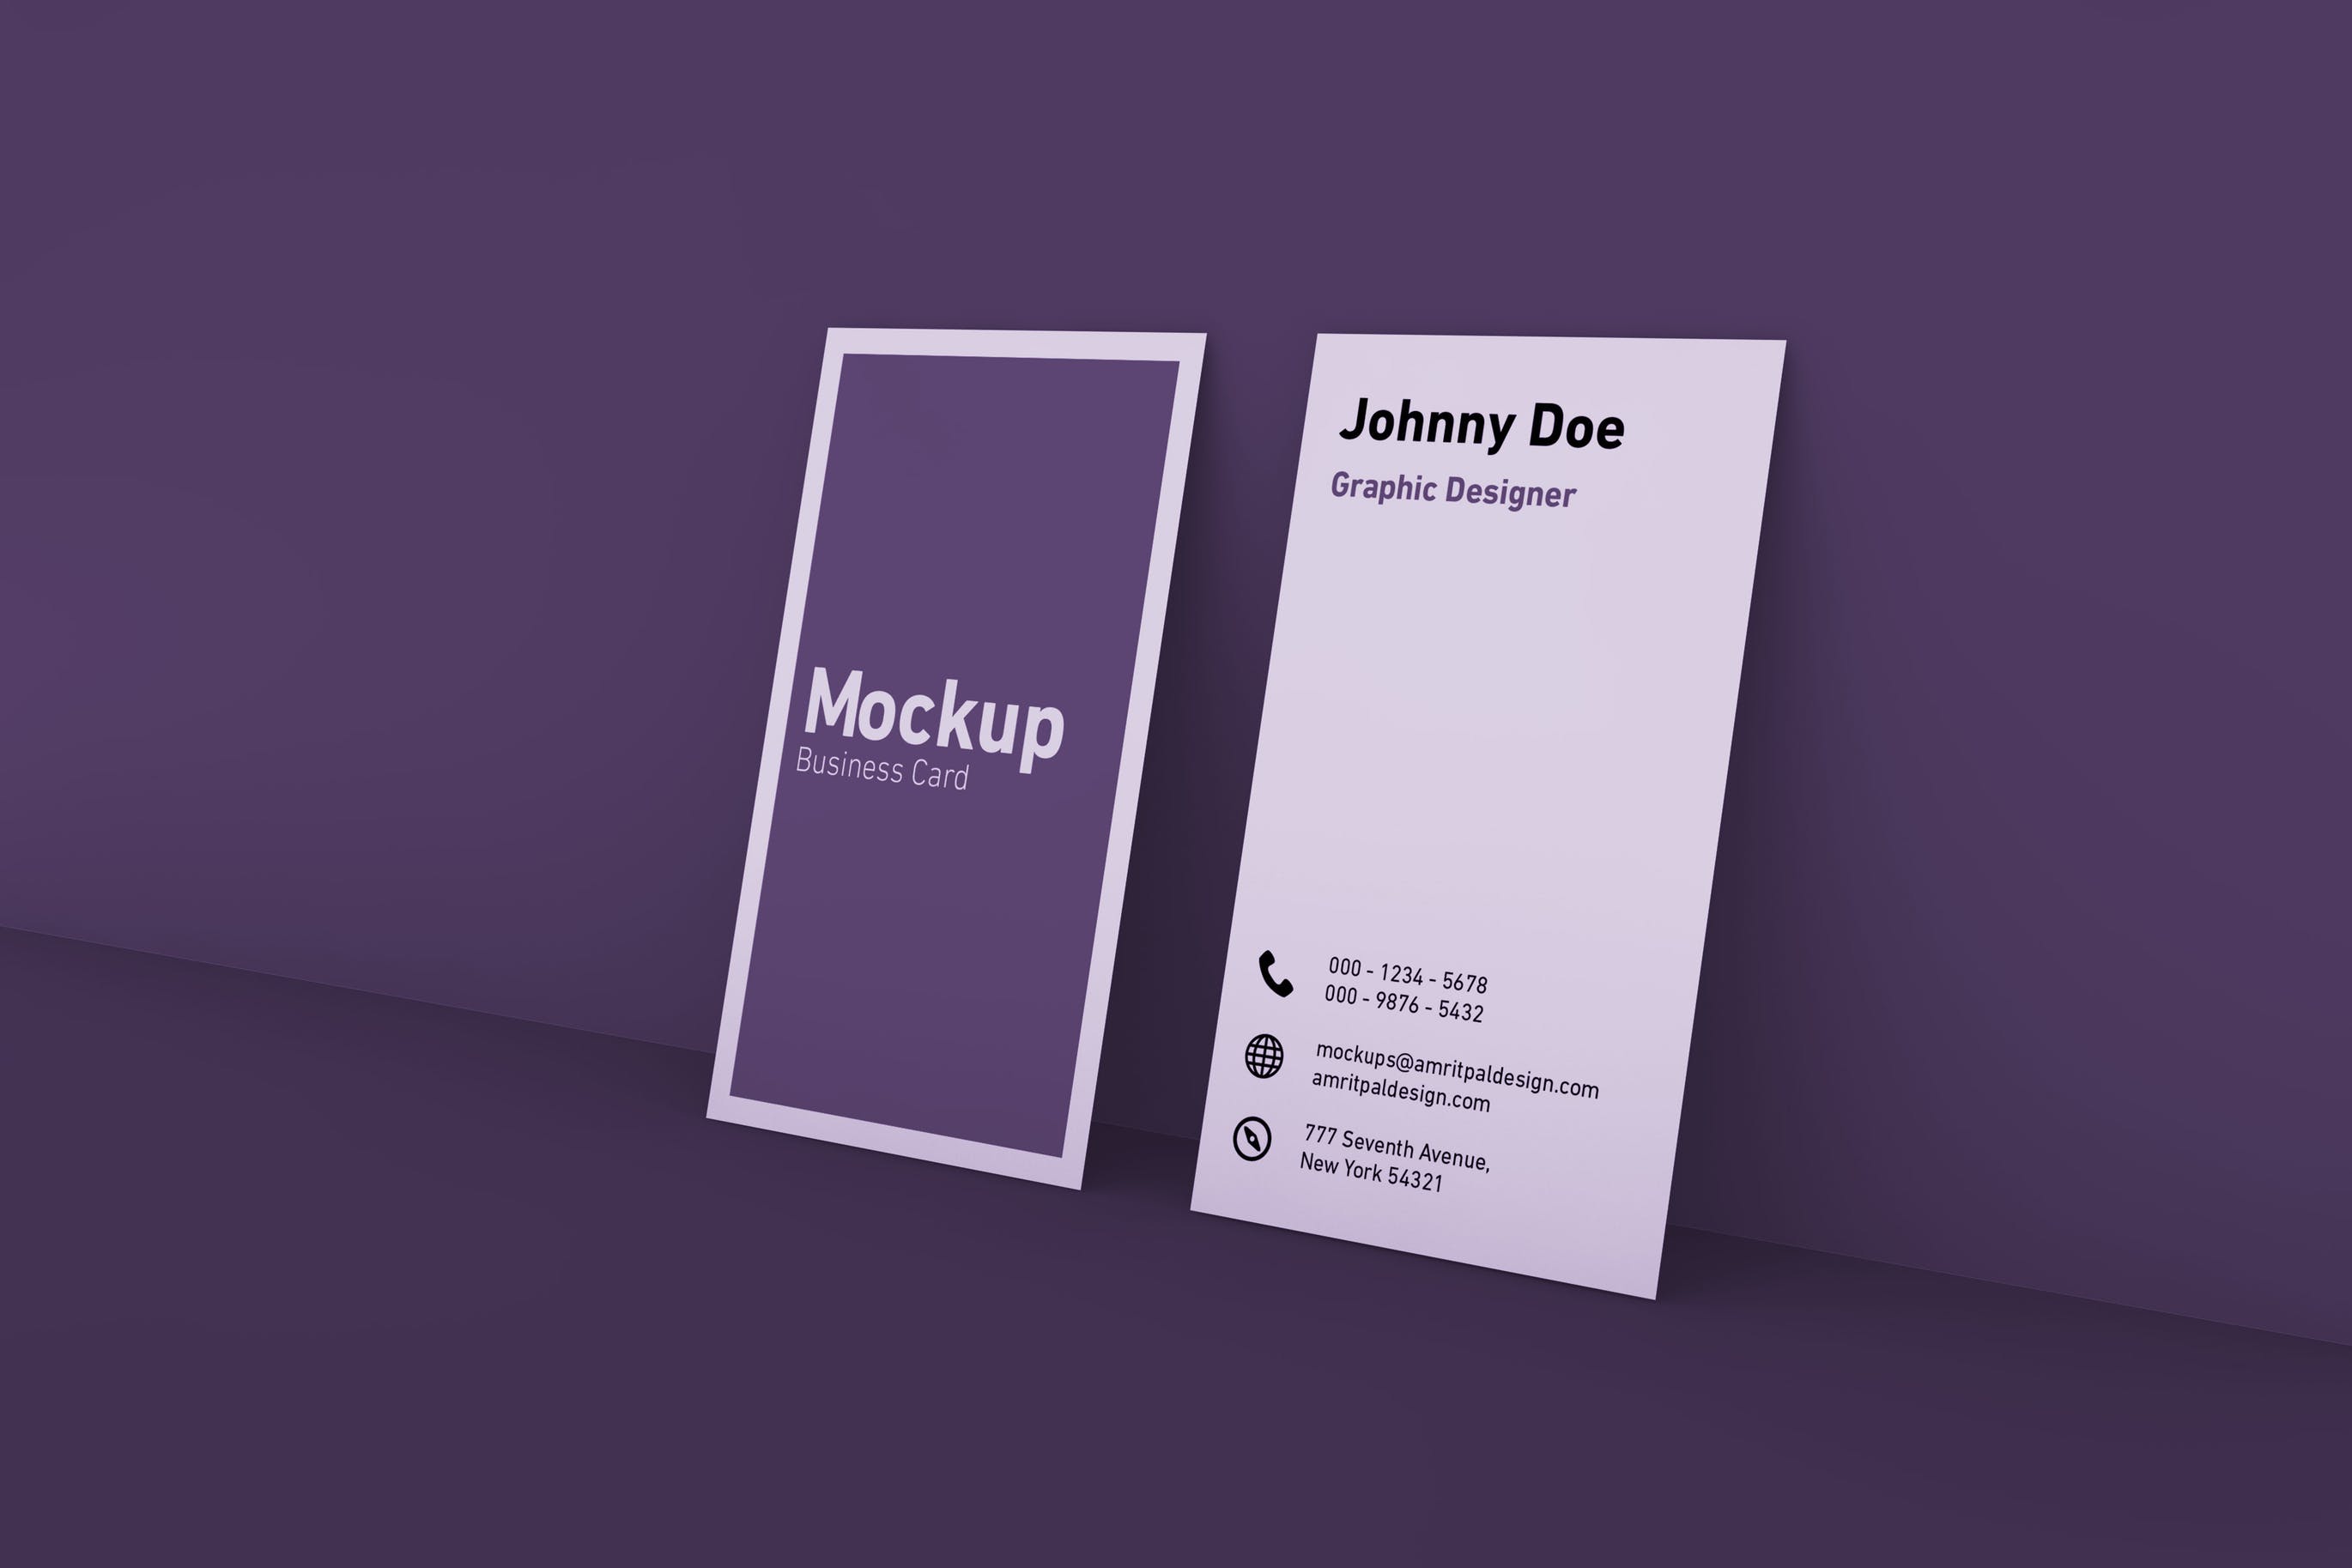 竖版设计风格商务名片设计展示效果图样机 Vertical Business Card Mockup插图